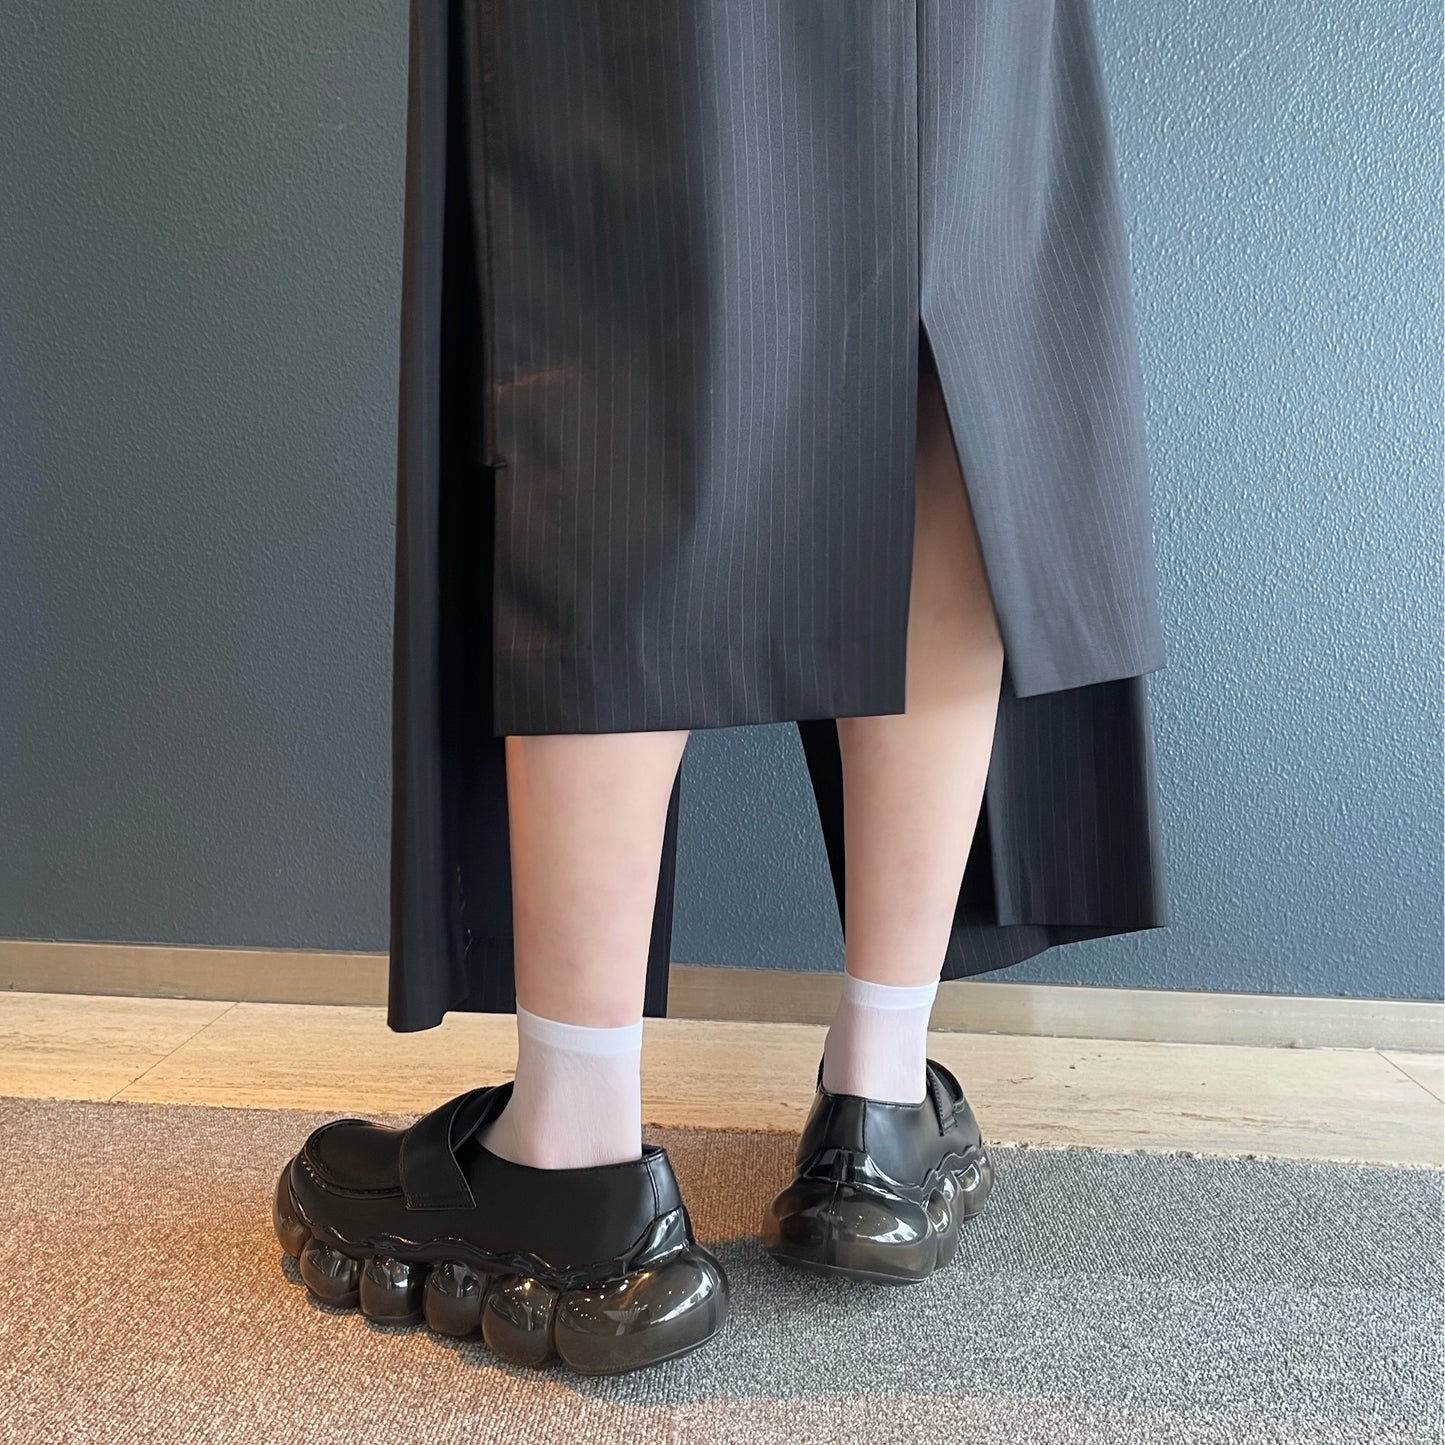 son skirt / black / セパレートスカート